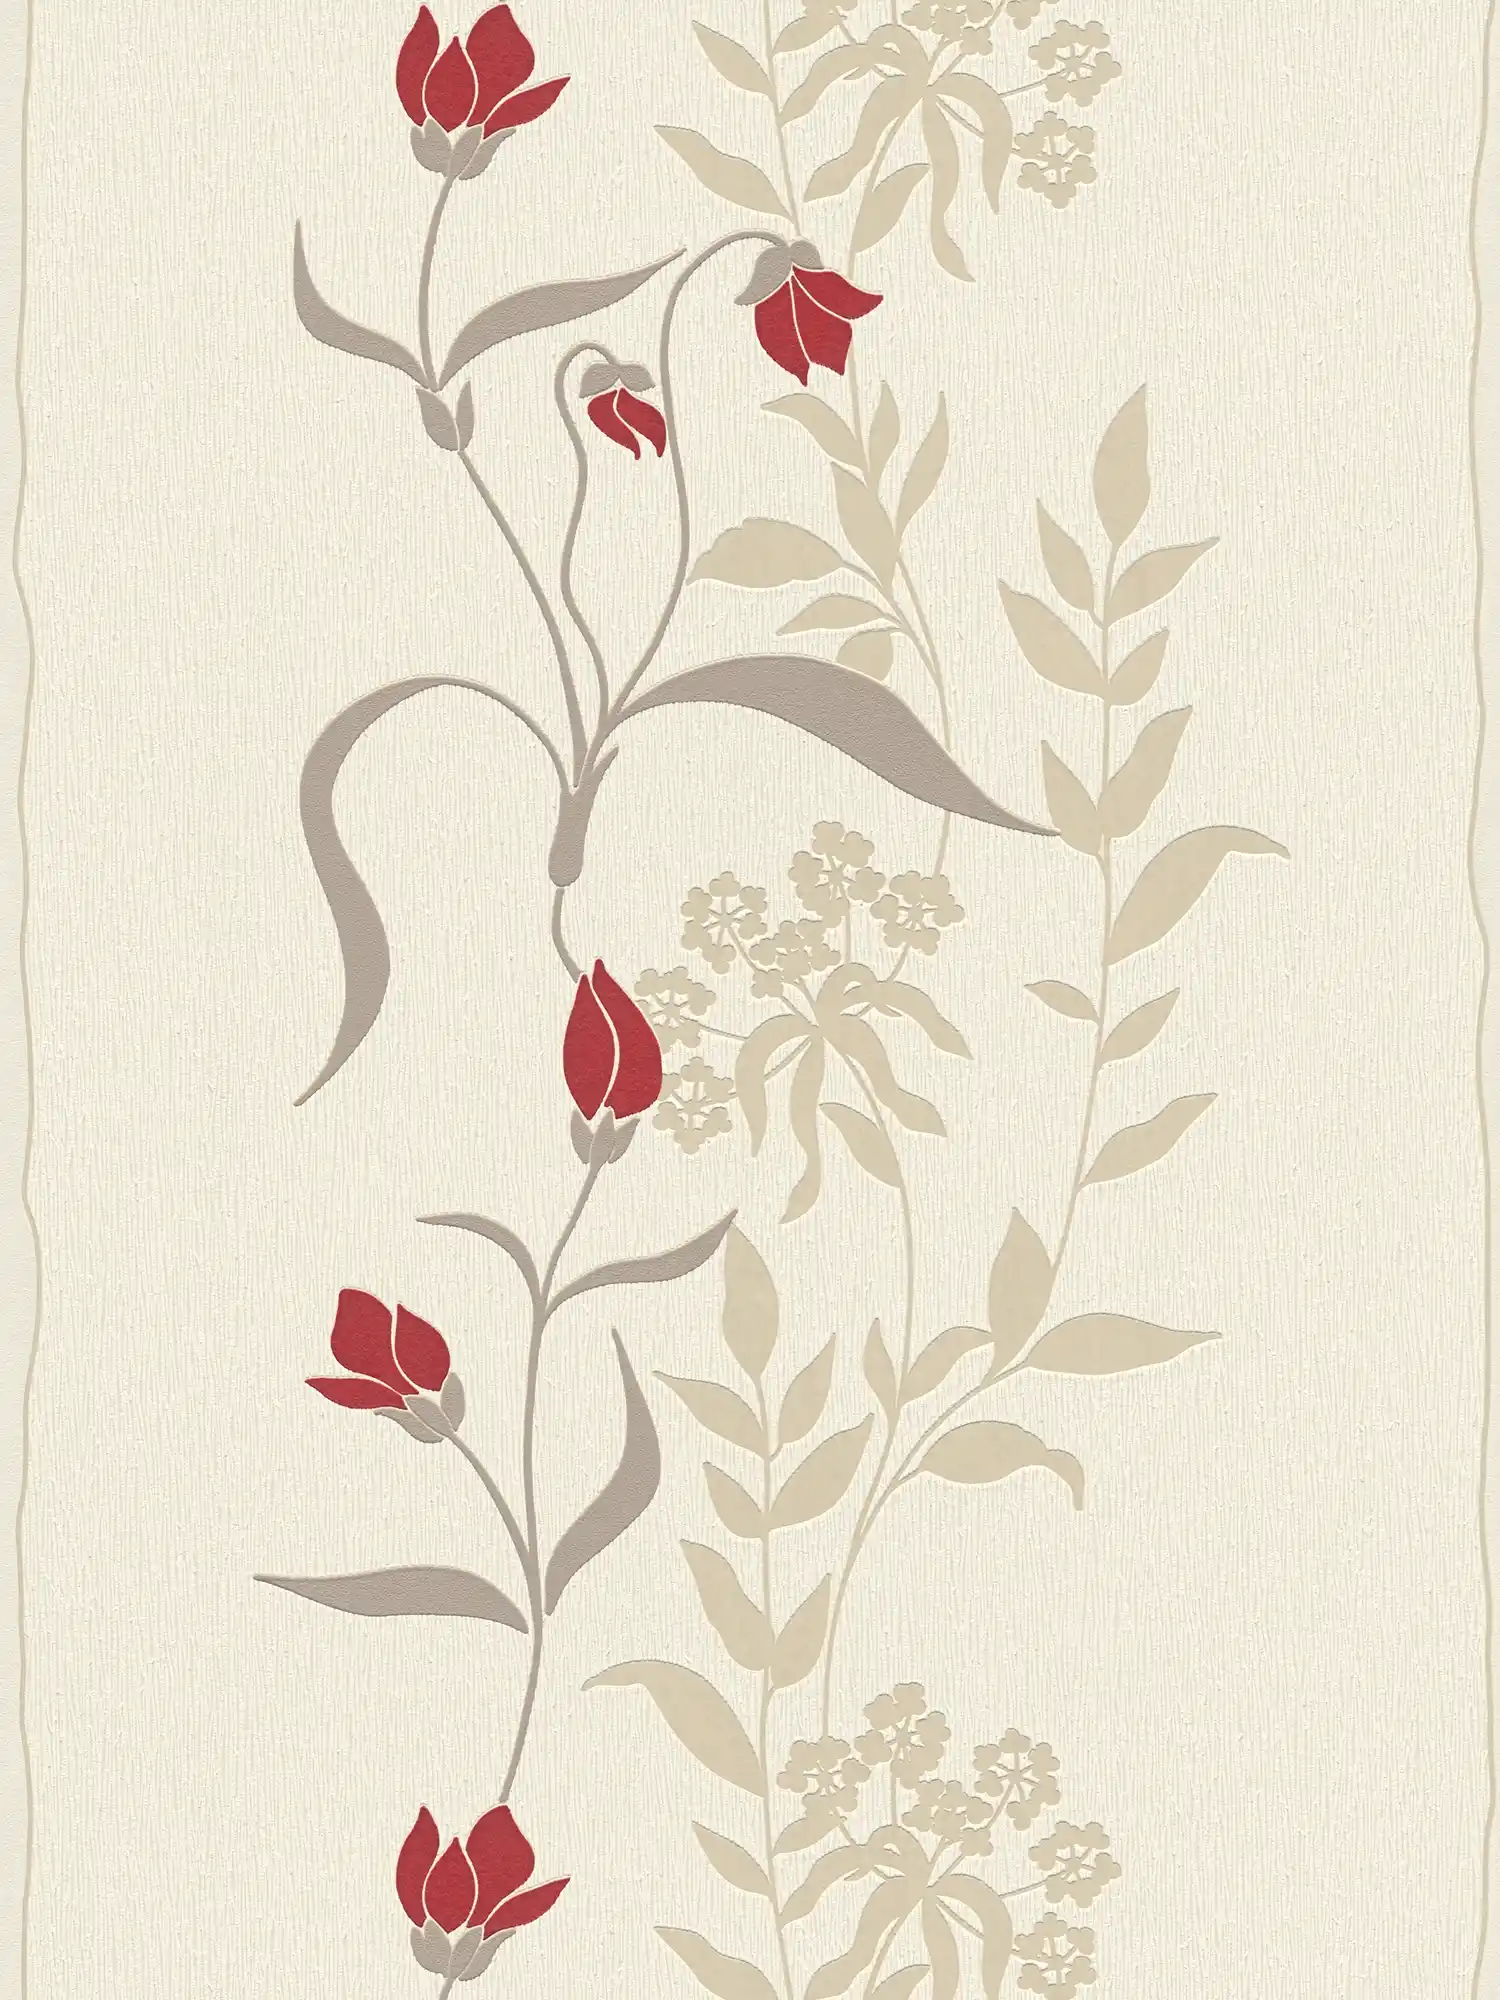 Papier peint salon avec fleurs rinceaux - beige, marron, rouge
